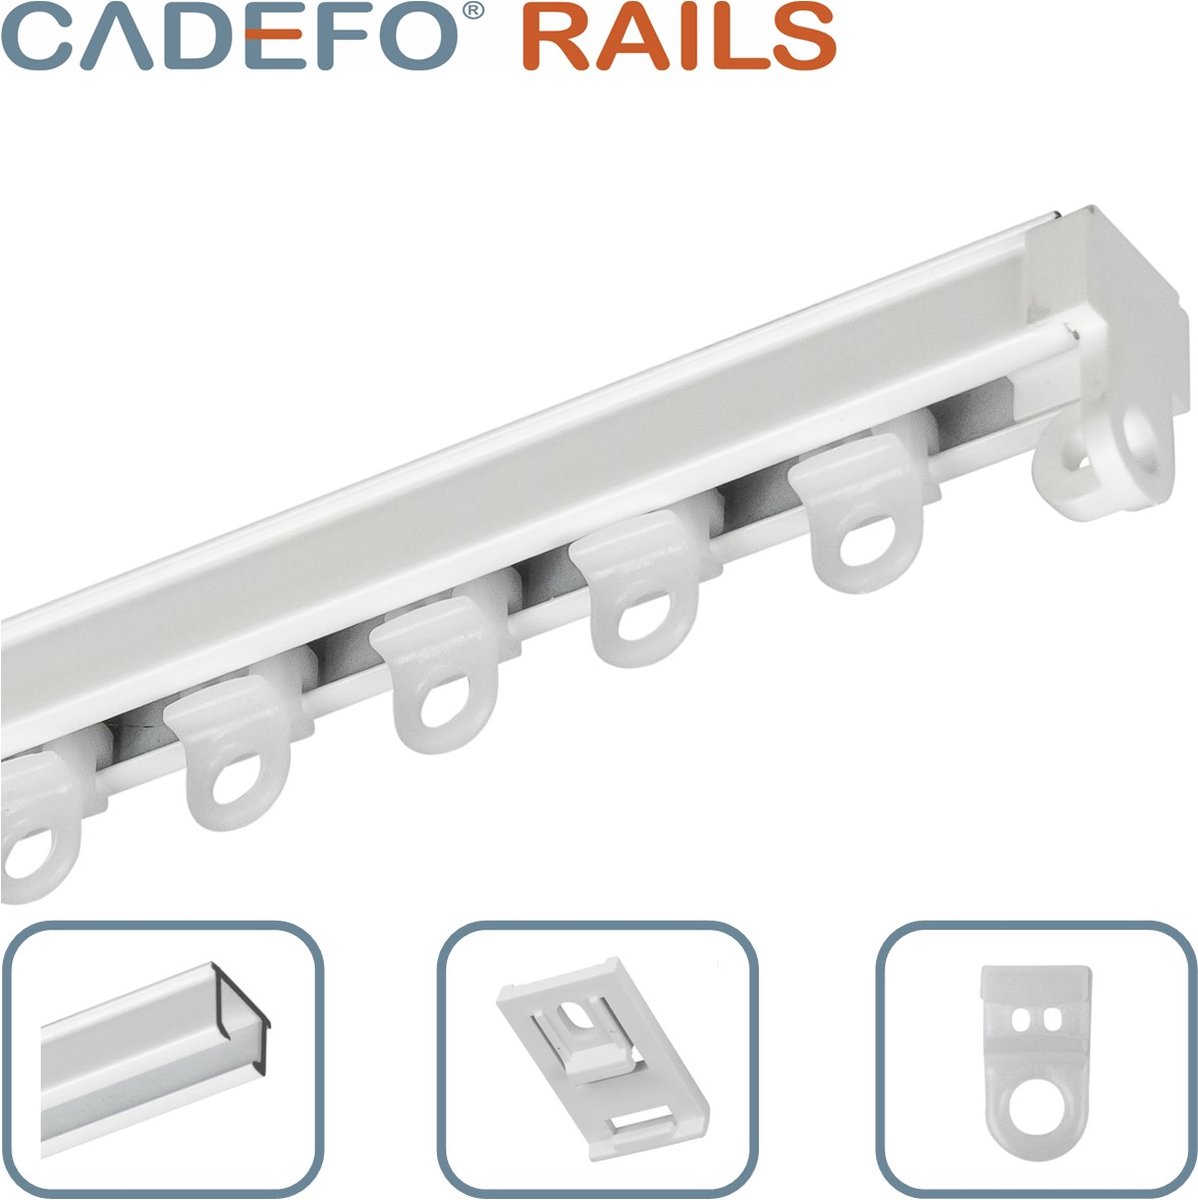 CADEFO RAILS (351 - 400 cm) Gordijnrails - Compleet op maat! - UIT 1 STUK - Leverbaar tot 6 meter - Plafondbevestiging - Lengte 369 cm